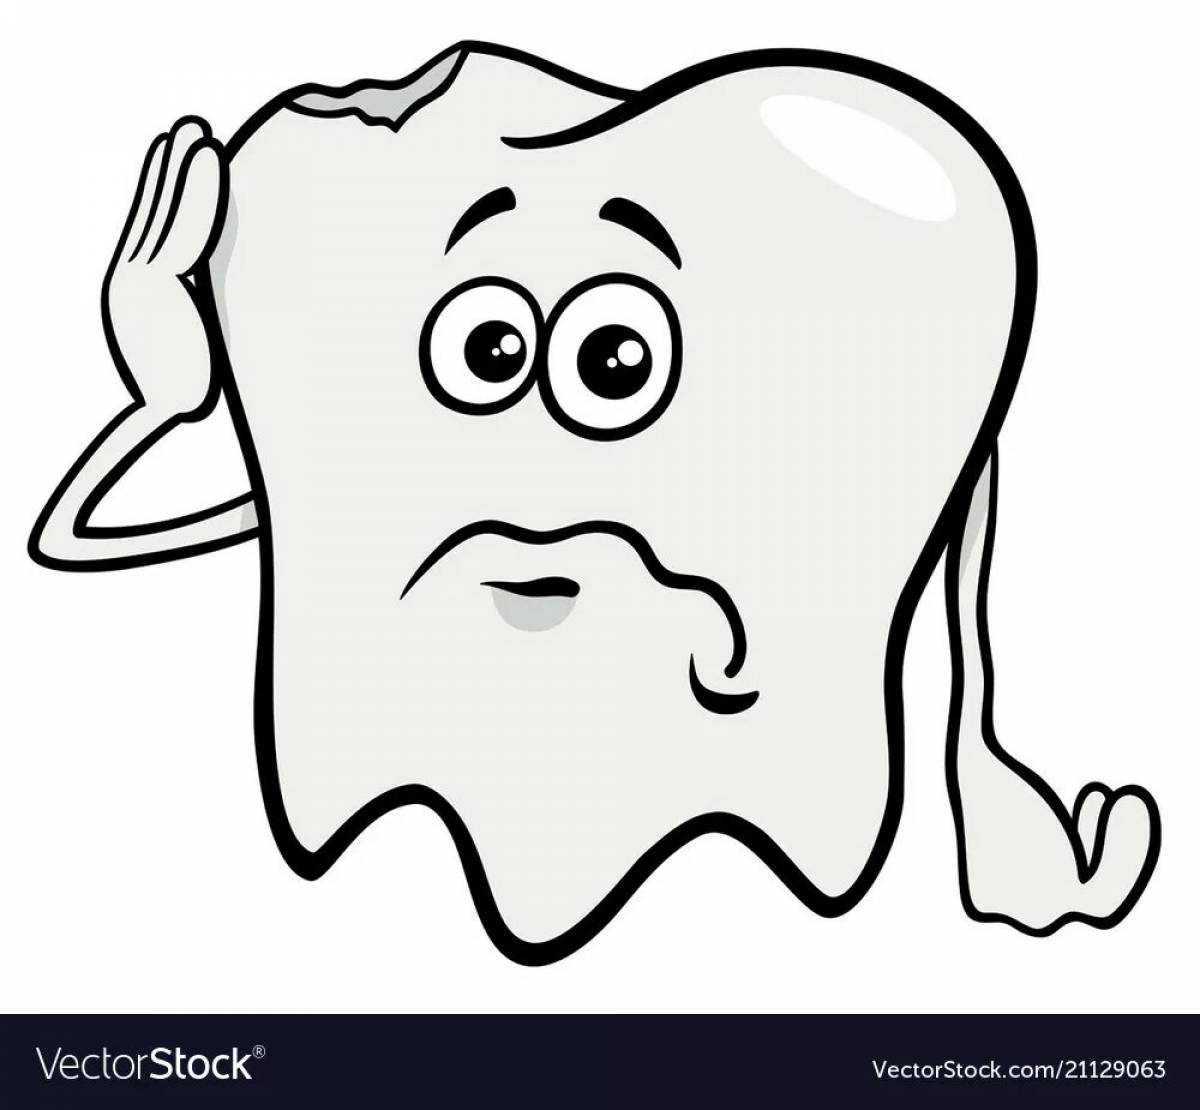 Sad tooth #7